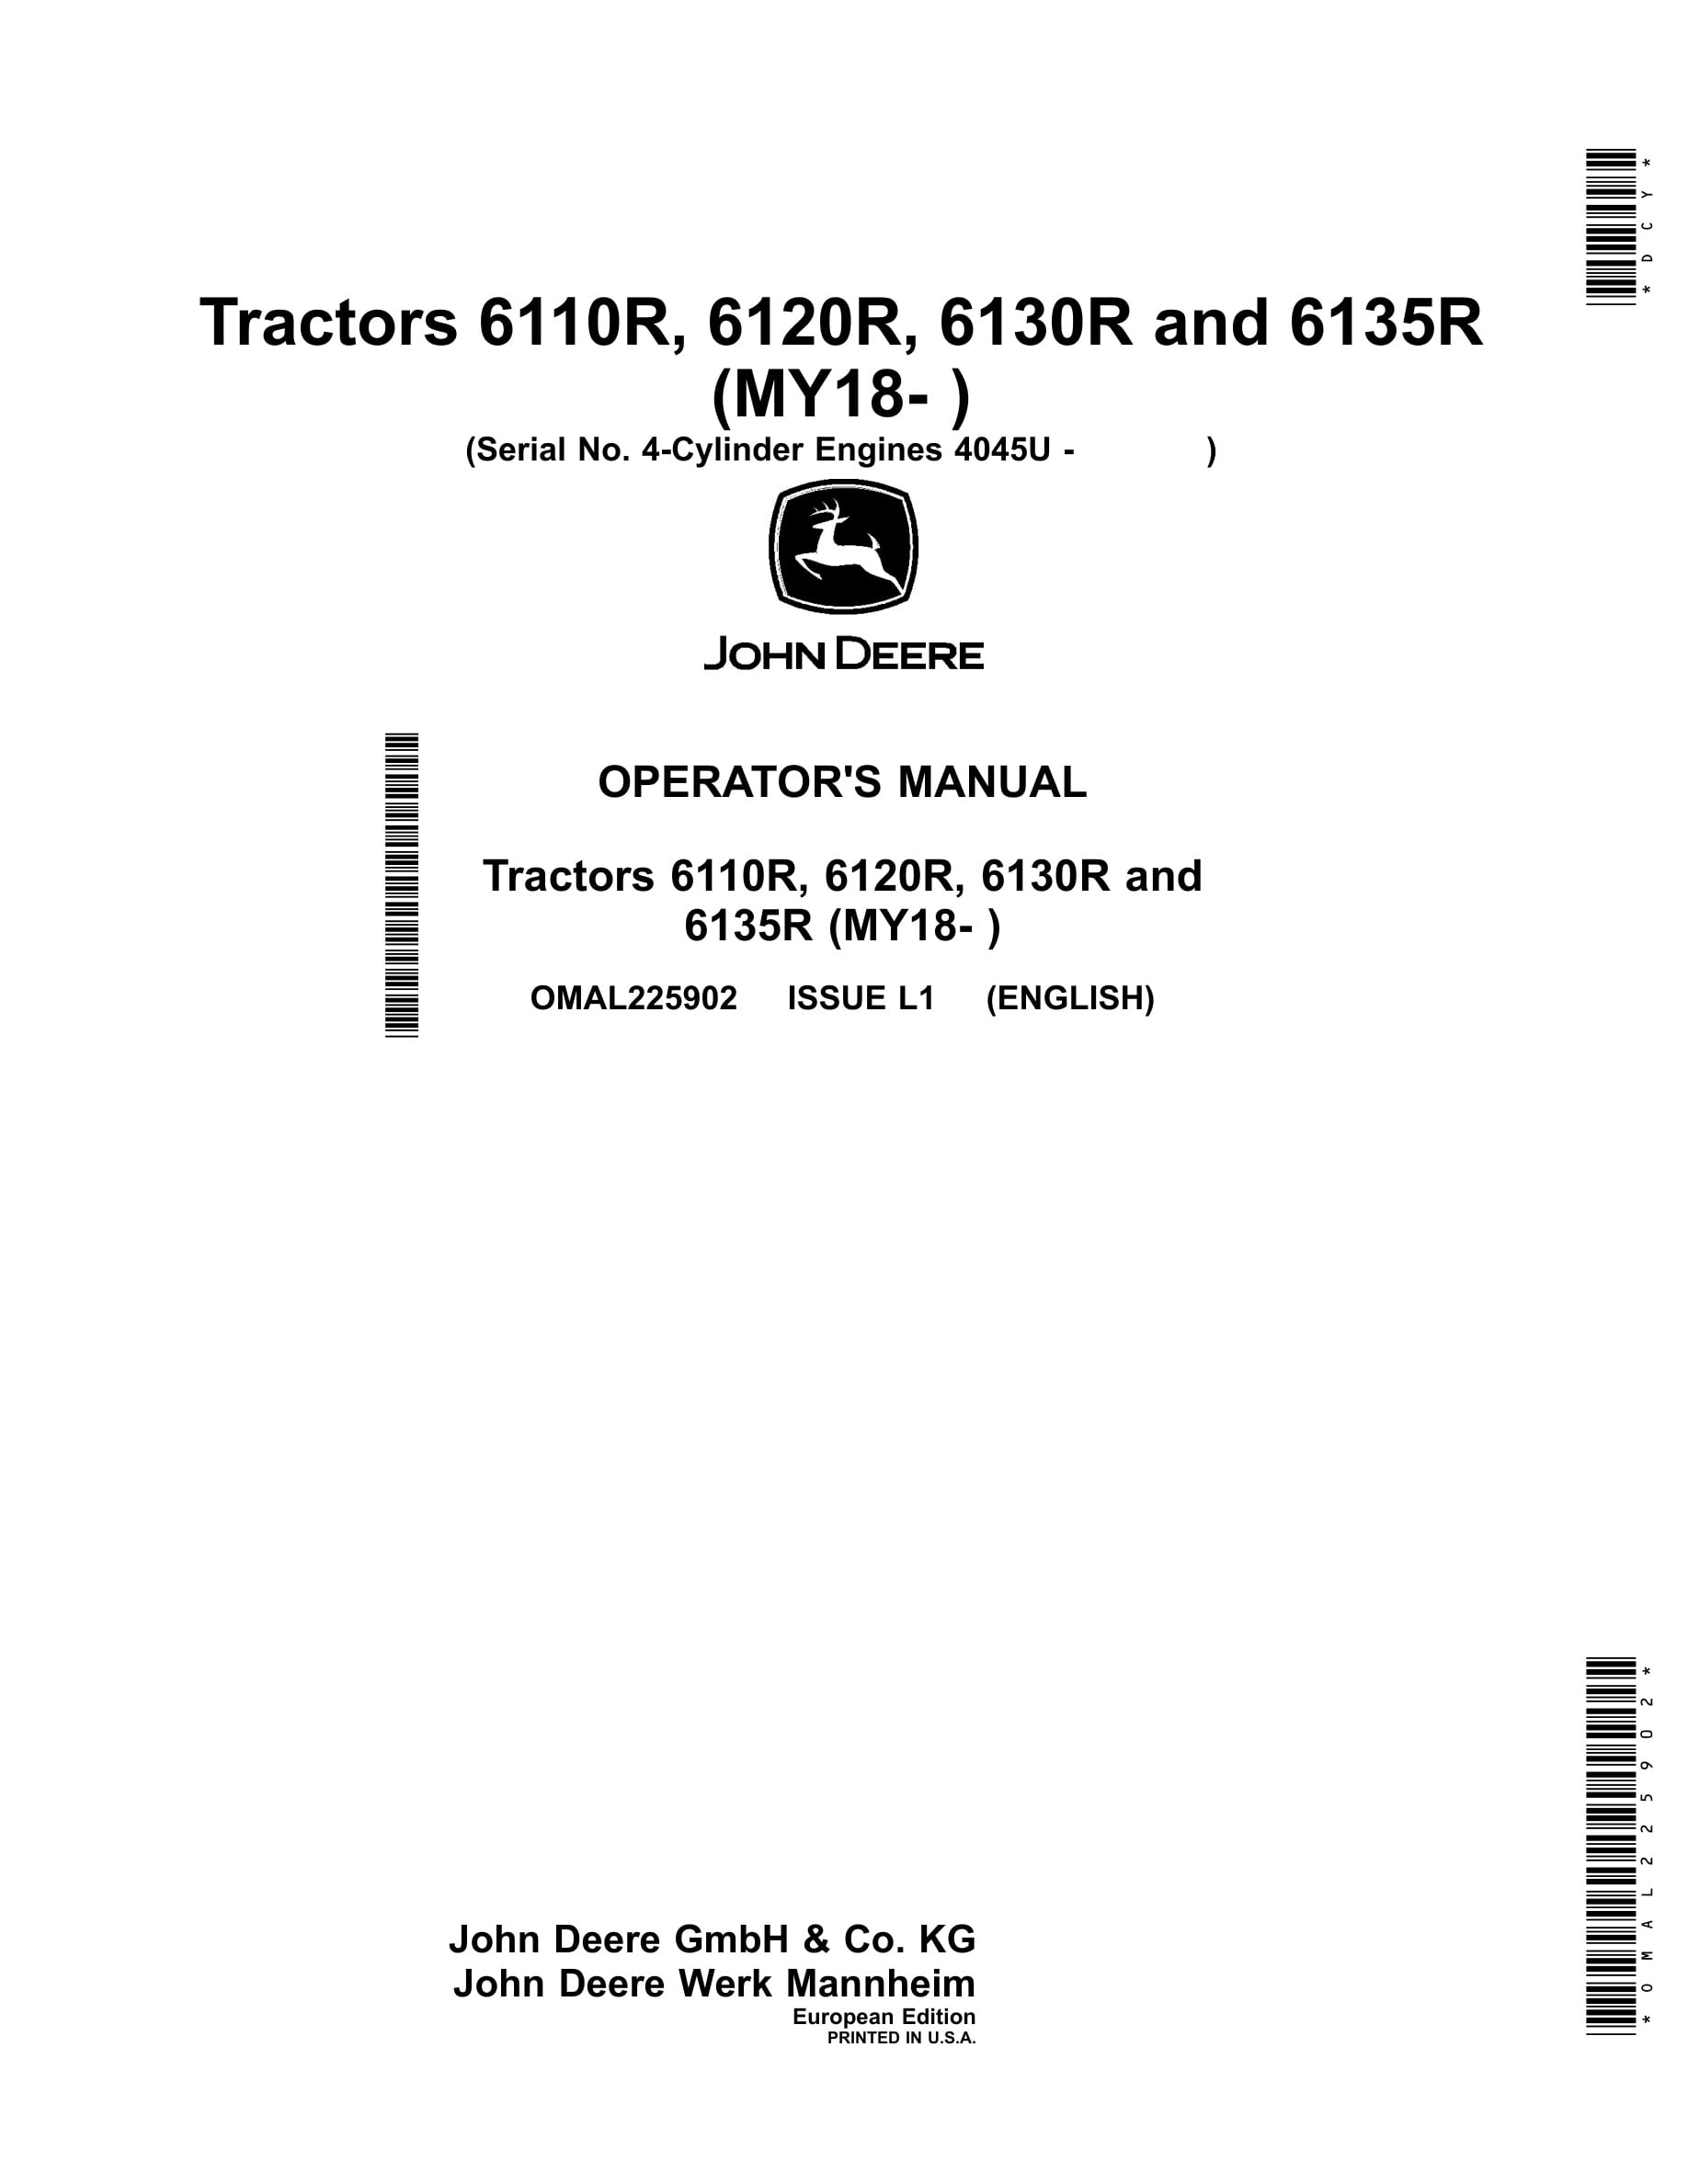 John Deere 6110r, 6120r, 6130r And 6135r Tractors Operator Manuals OMAL225902-1